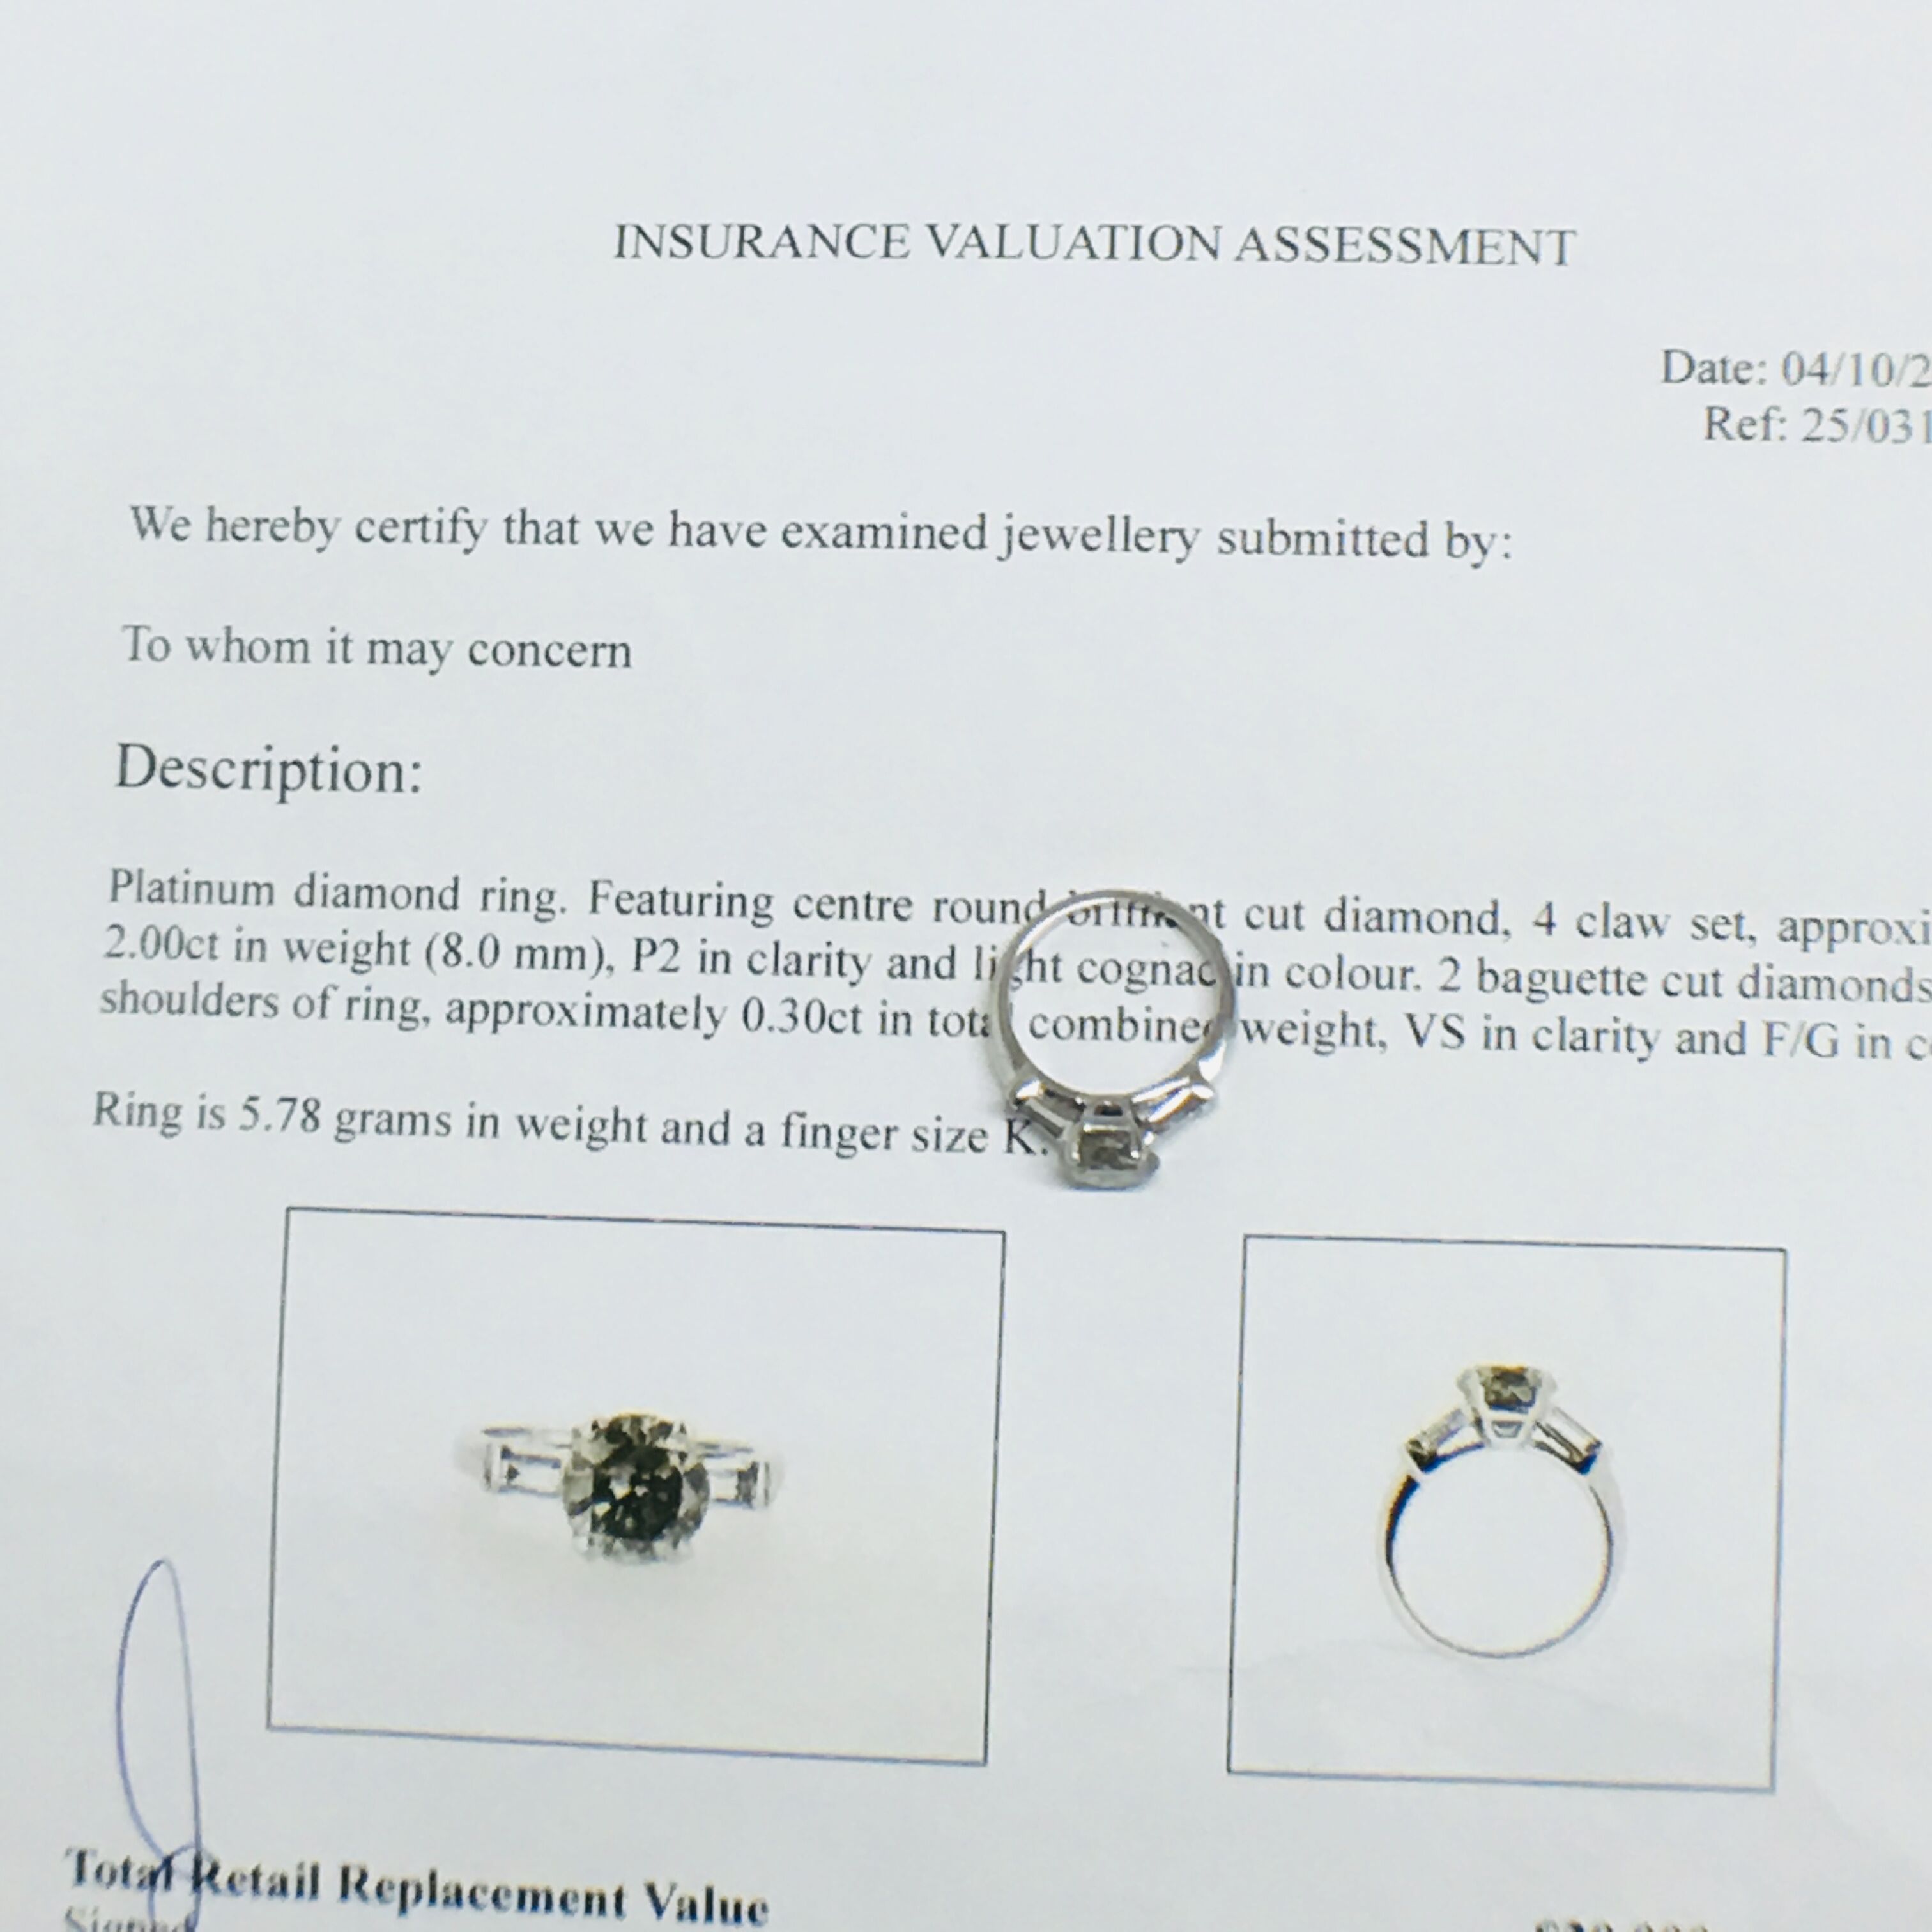 platinum diamond ring featuring - Image 12 of 12